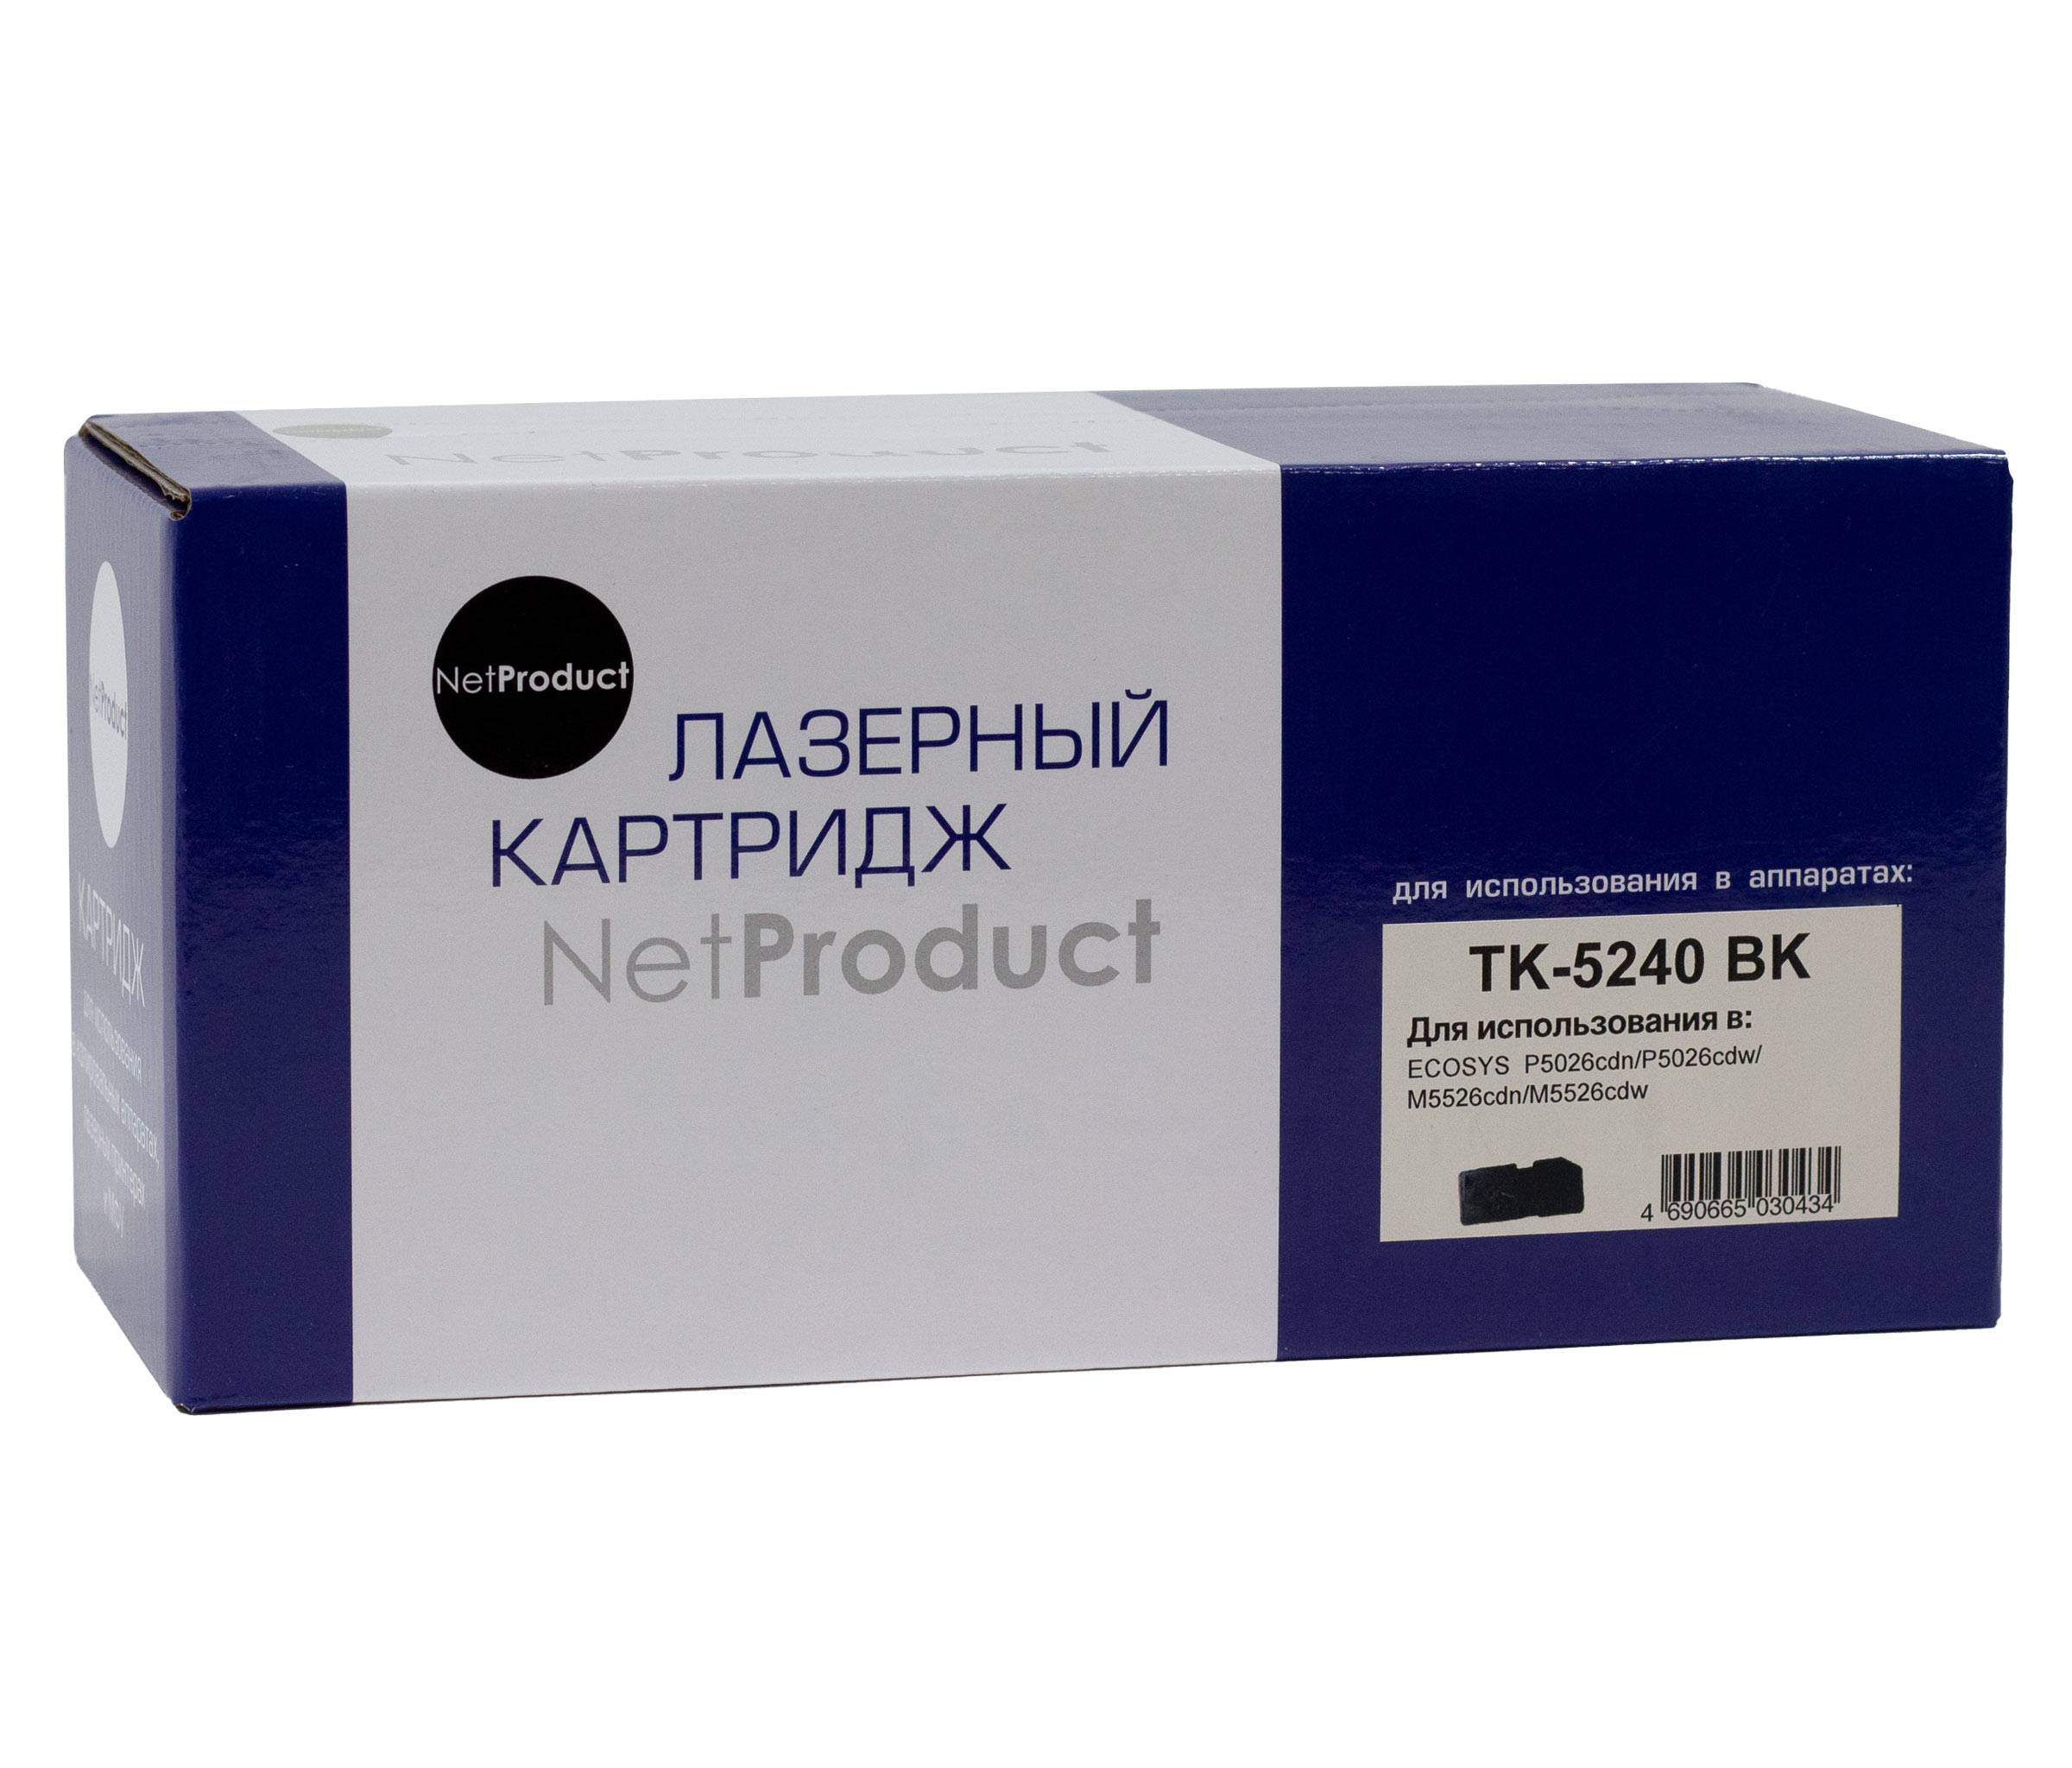 Тонер-картридж NetProduct (N-TK-5240Bk) для Kyocera-Mita P5026cdn/M5526cdn, Bk, 4K